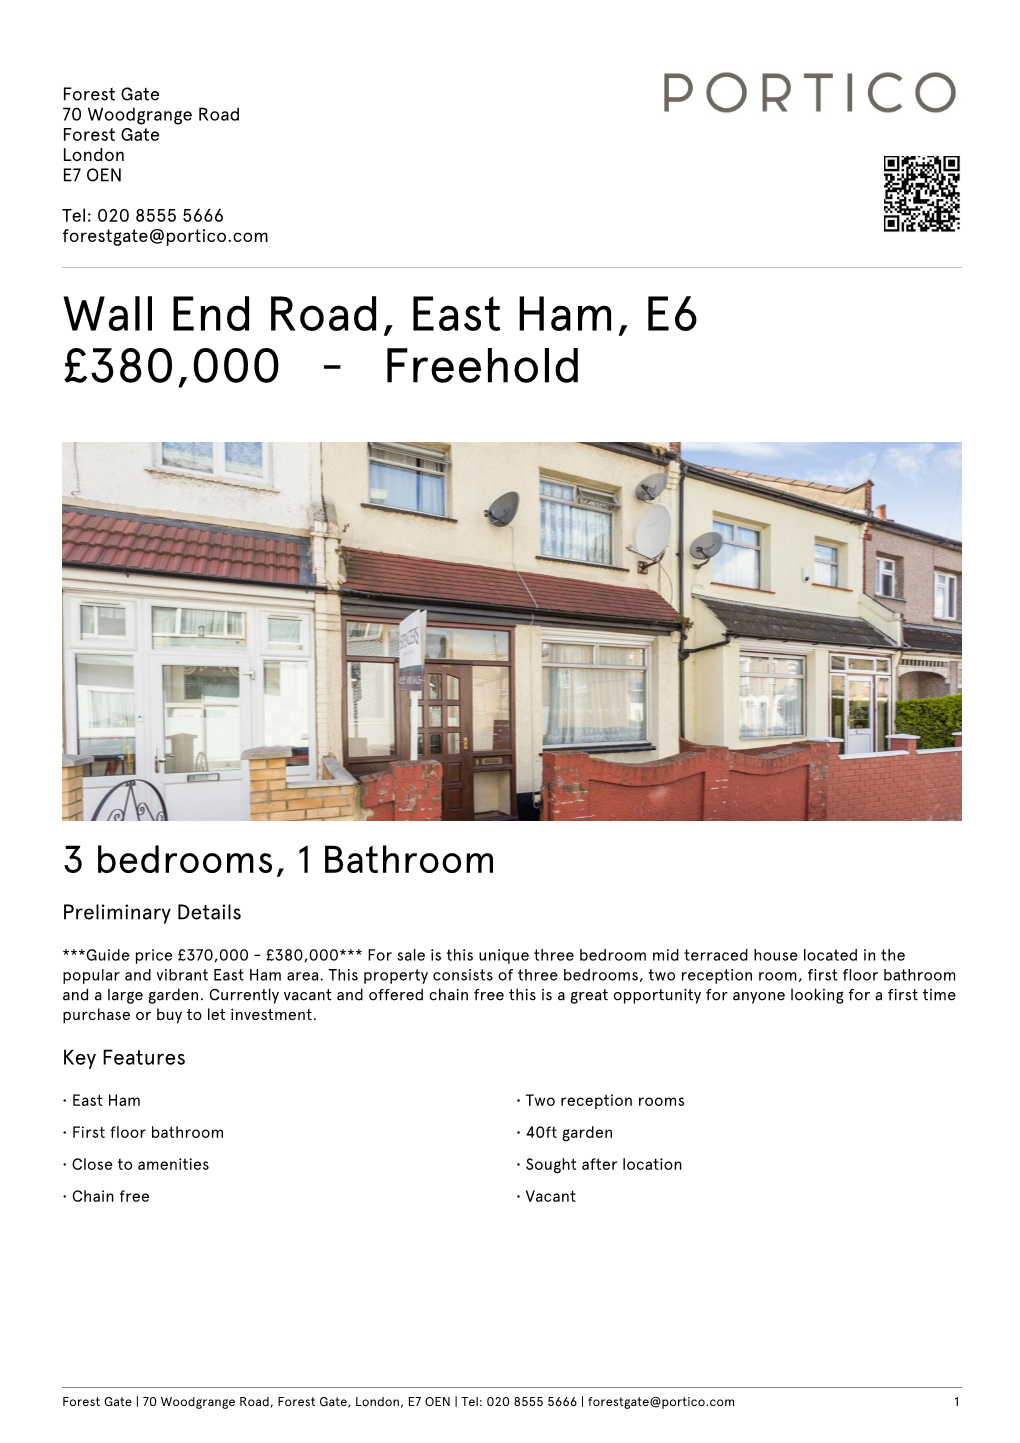 Wall End Road, East Ham, E6 £380000